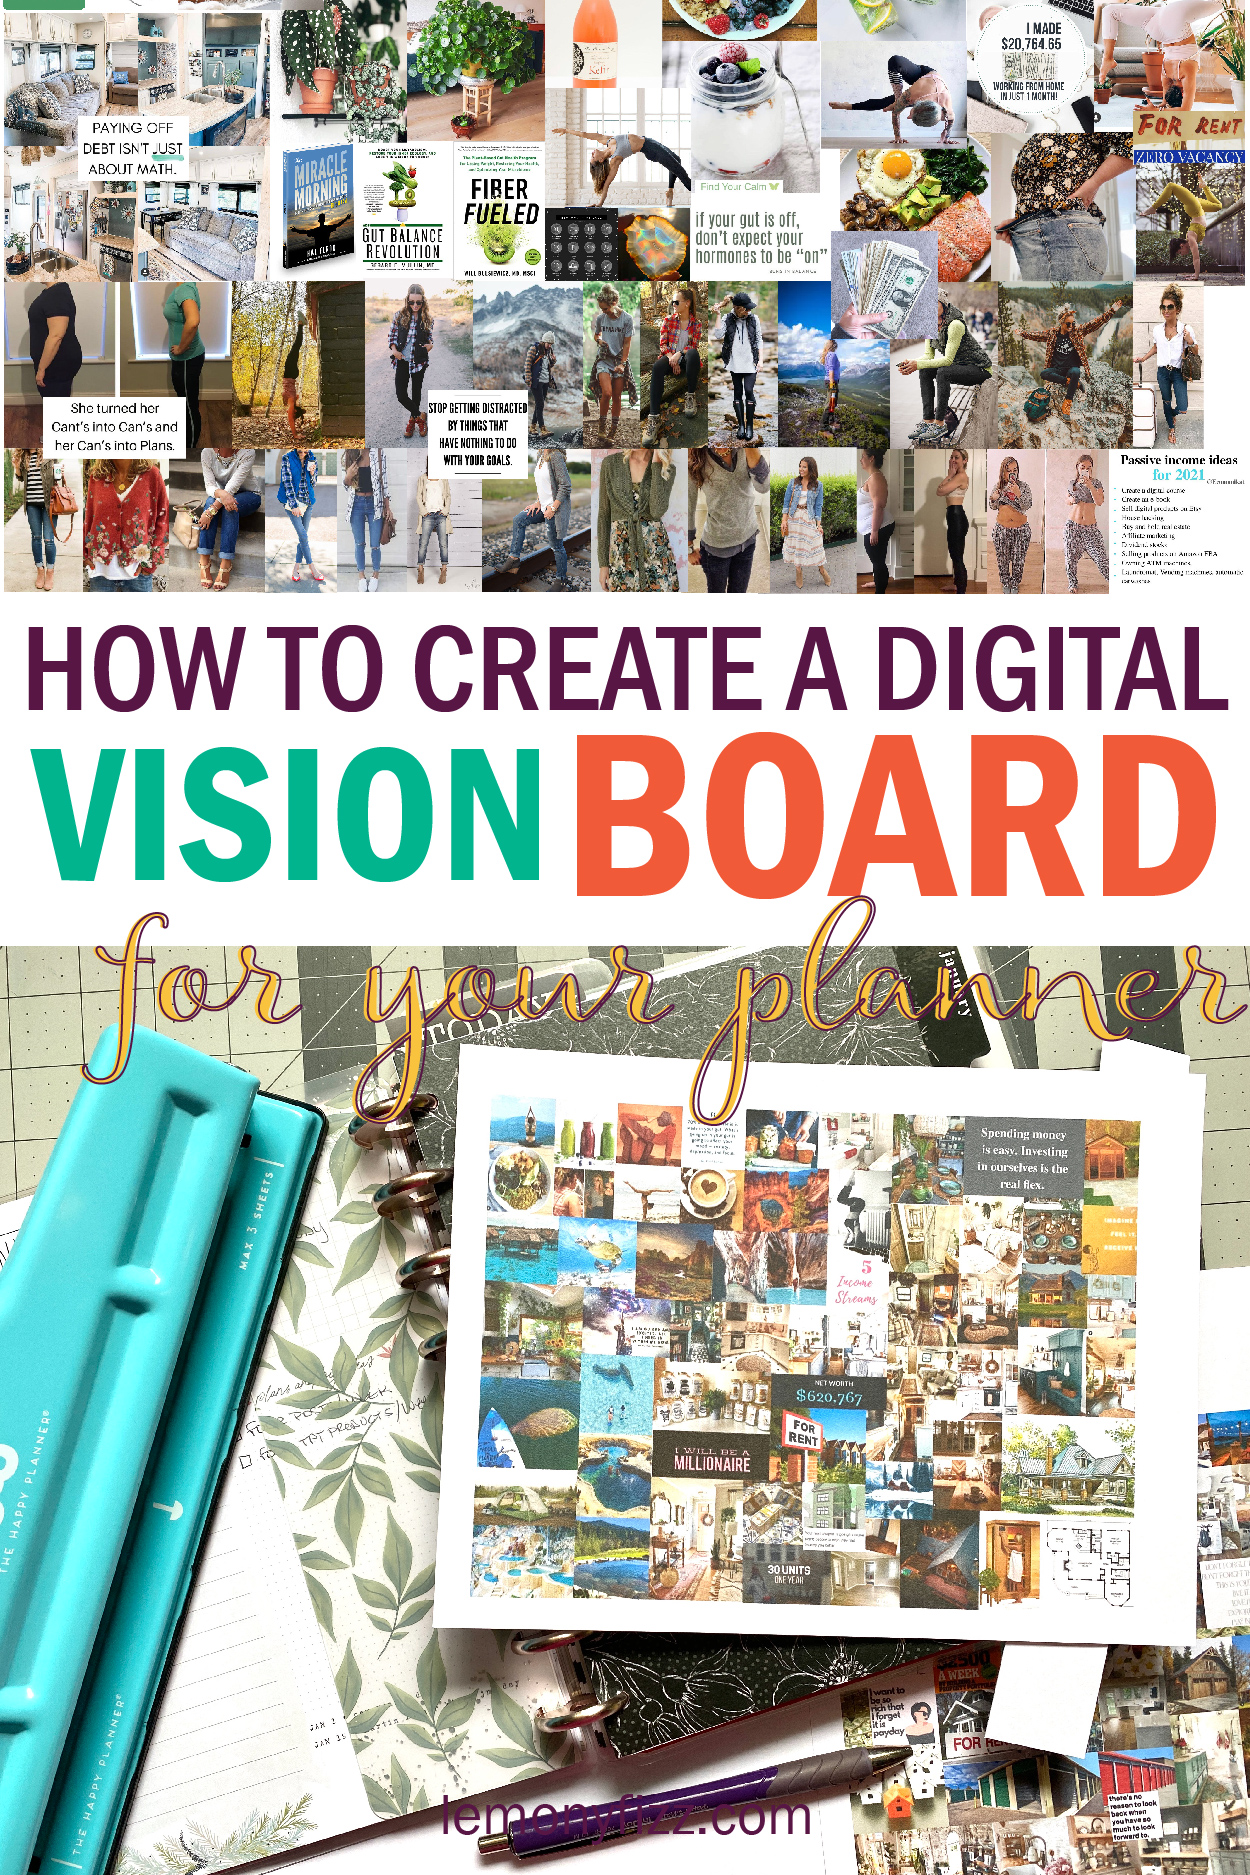 Digital Vision Board Background